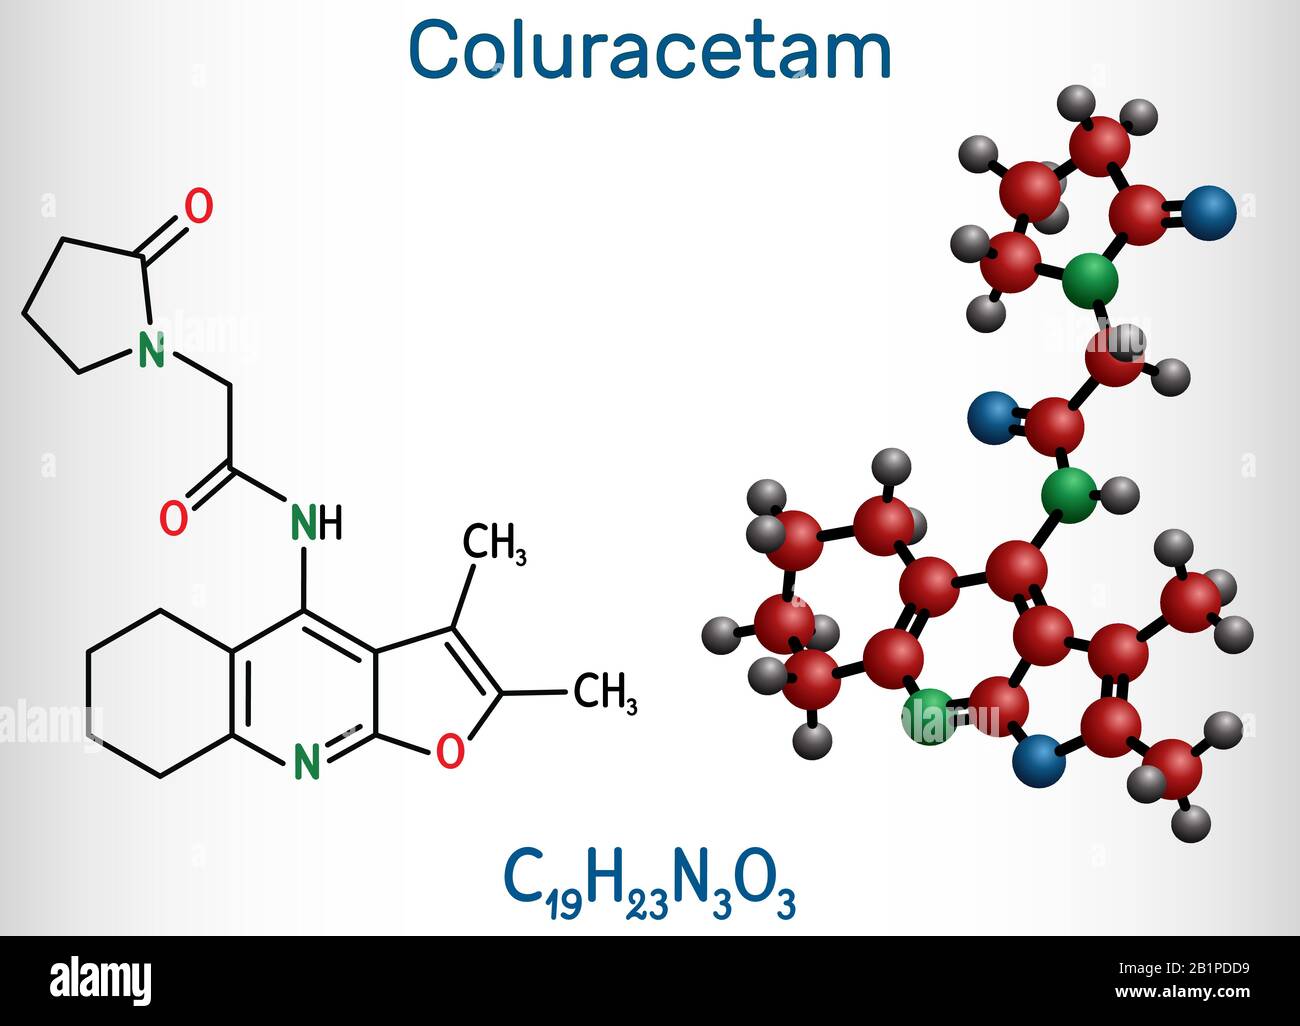 Coluracetam, BCI-540, C19H23N3O3-Molekül. Sie ist ein nootroper Vertreter der Familie Rennbahn. Strukturelle chemische Formel und Molekularmodell. Vektor il Stock Vektor